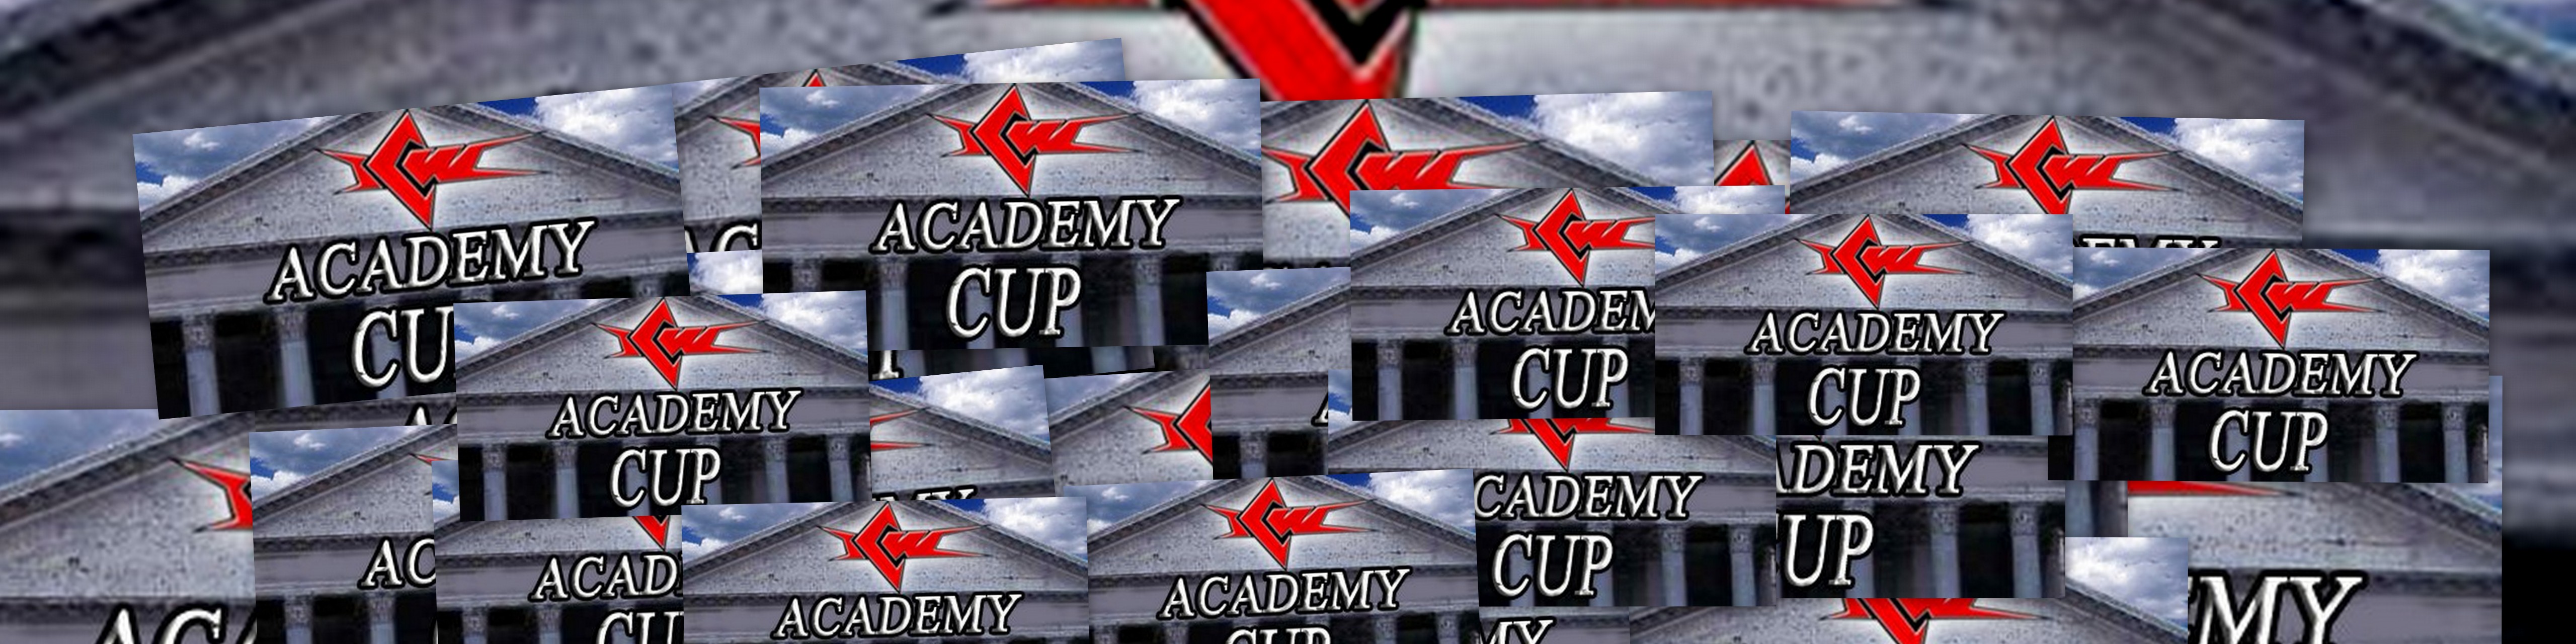 ICW Academy Cup 2012: 8 Coppie per una Coppa!